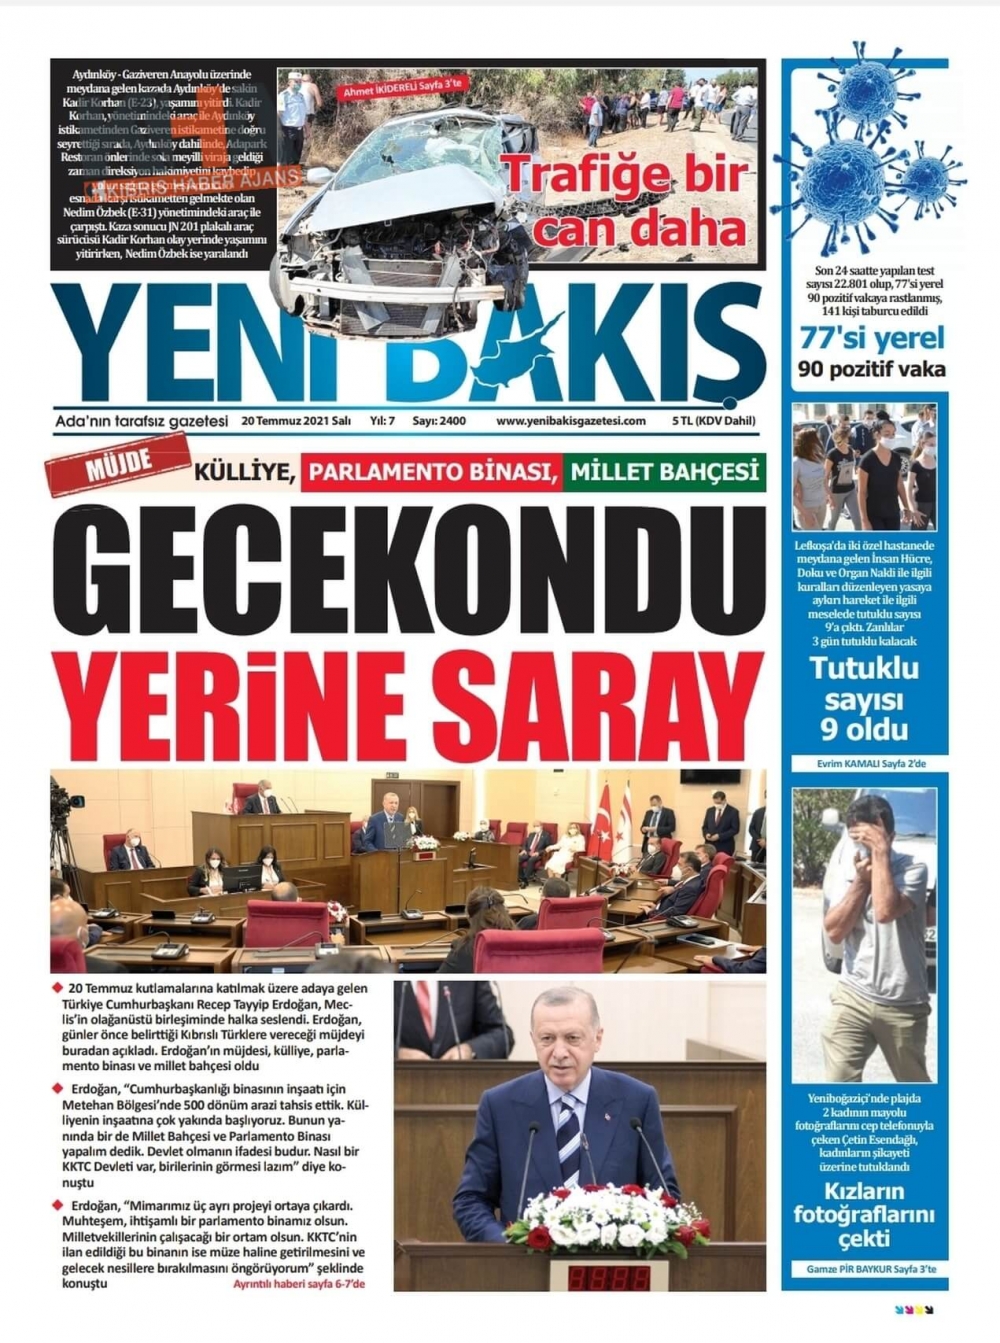 KKTC'de basılı gazeteler Erdoğan'ın Müjdesini nasıl gördü? galerisi resim 8